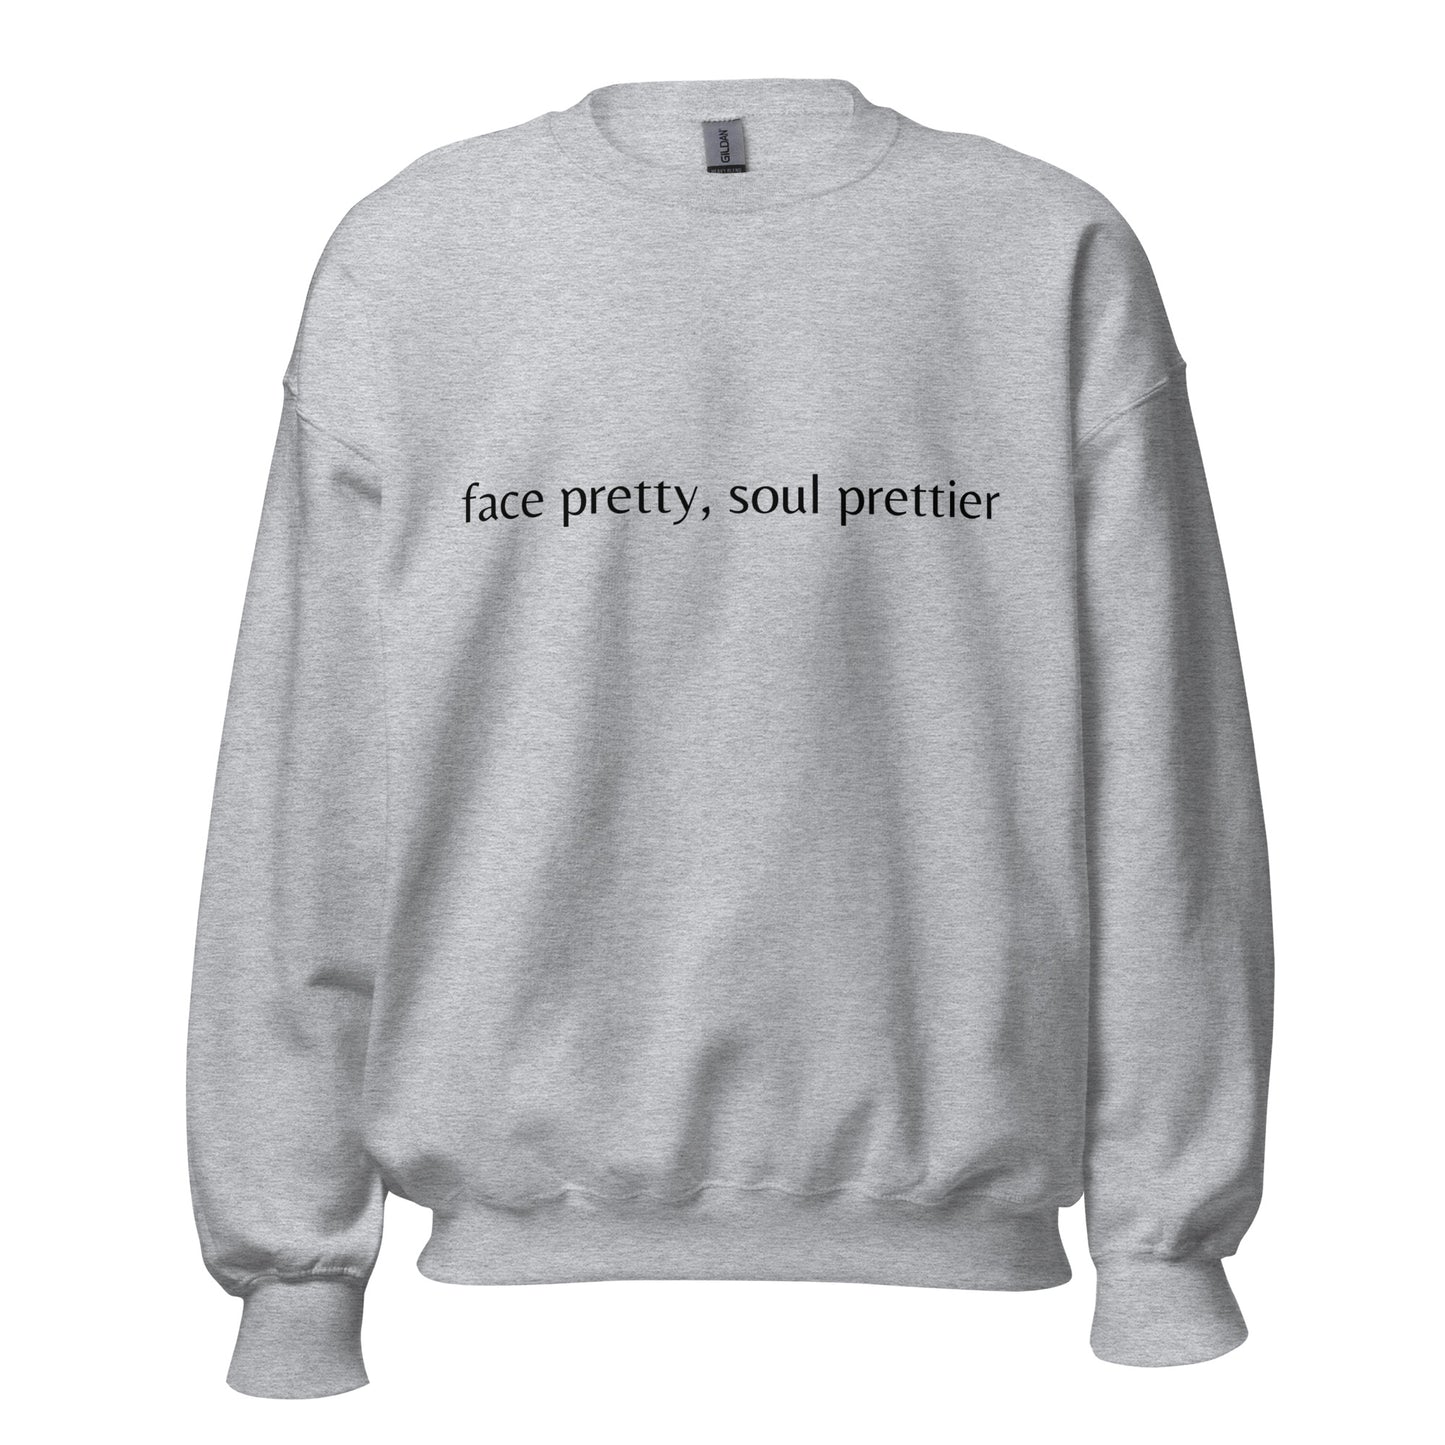 Prettier soul- Sweatshirt